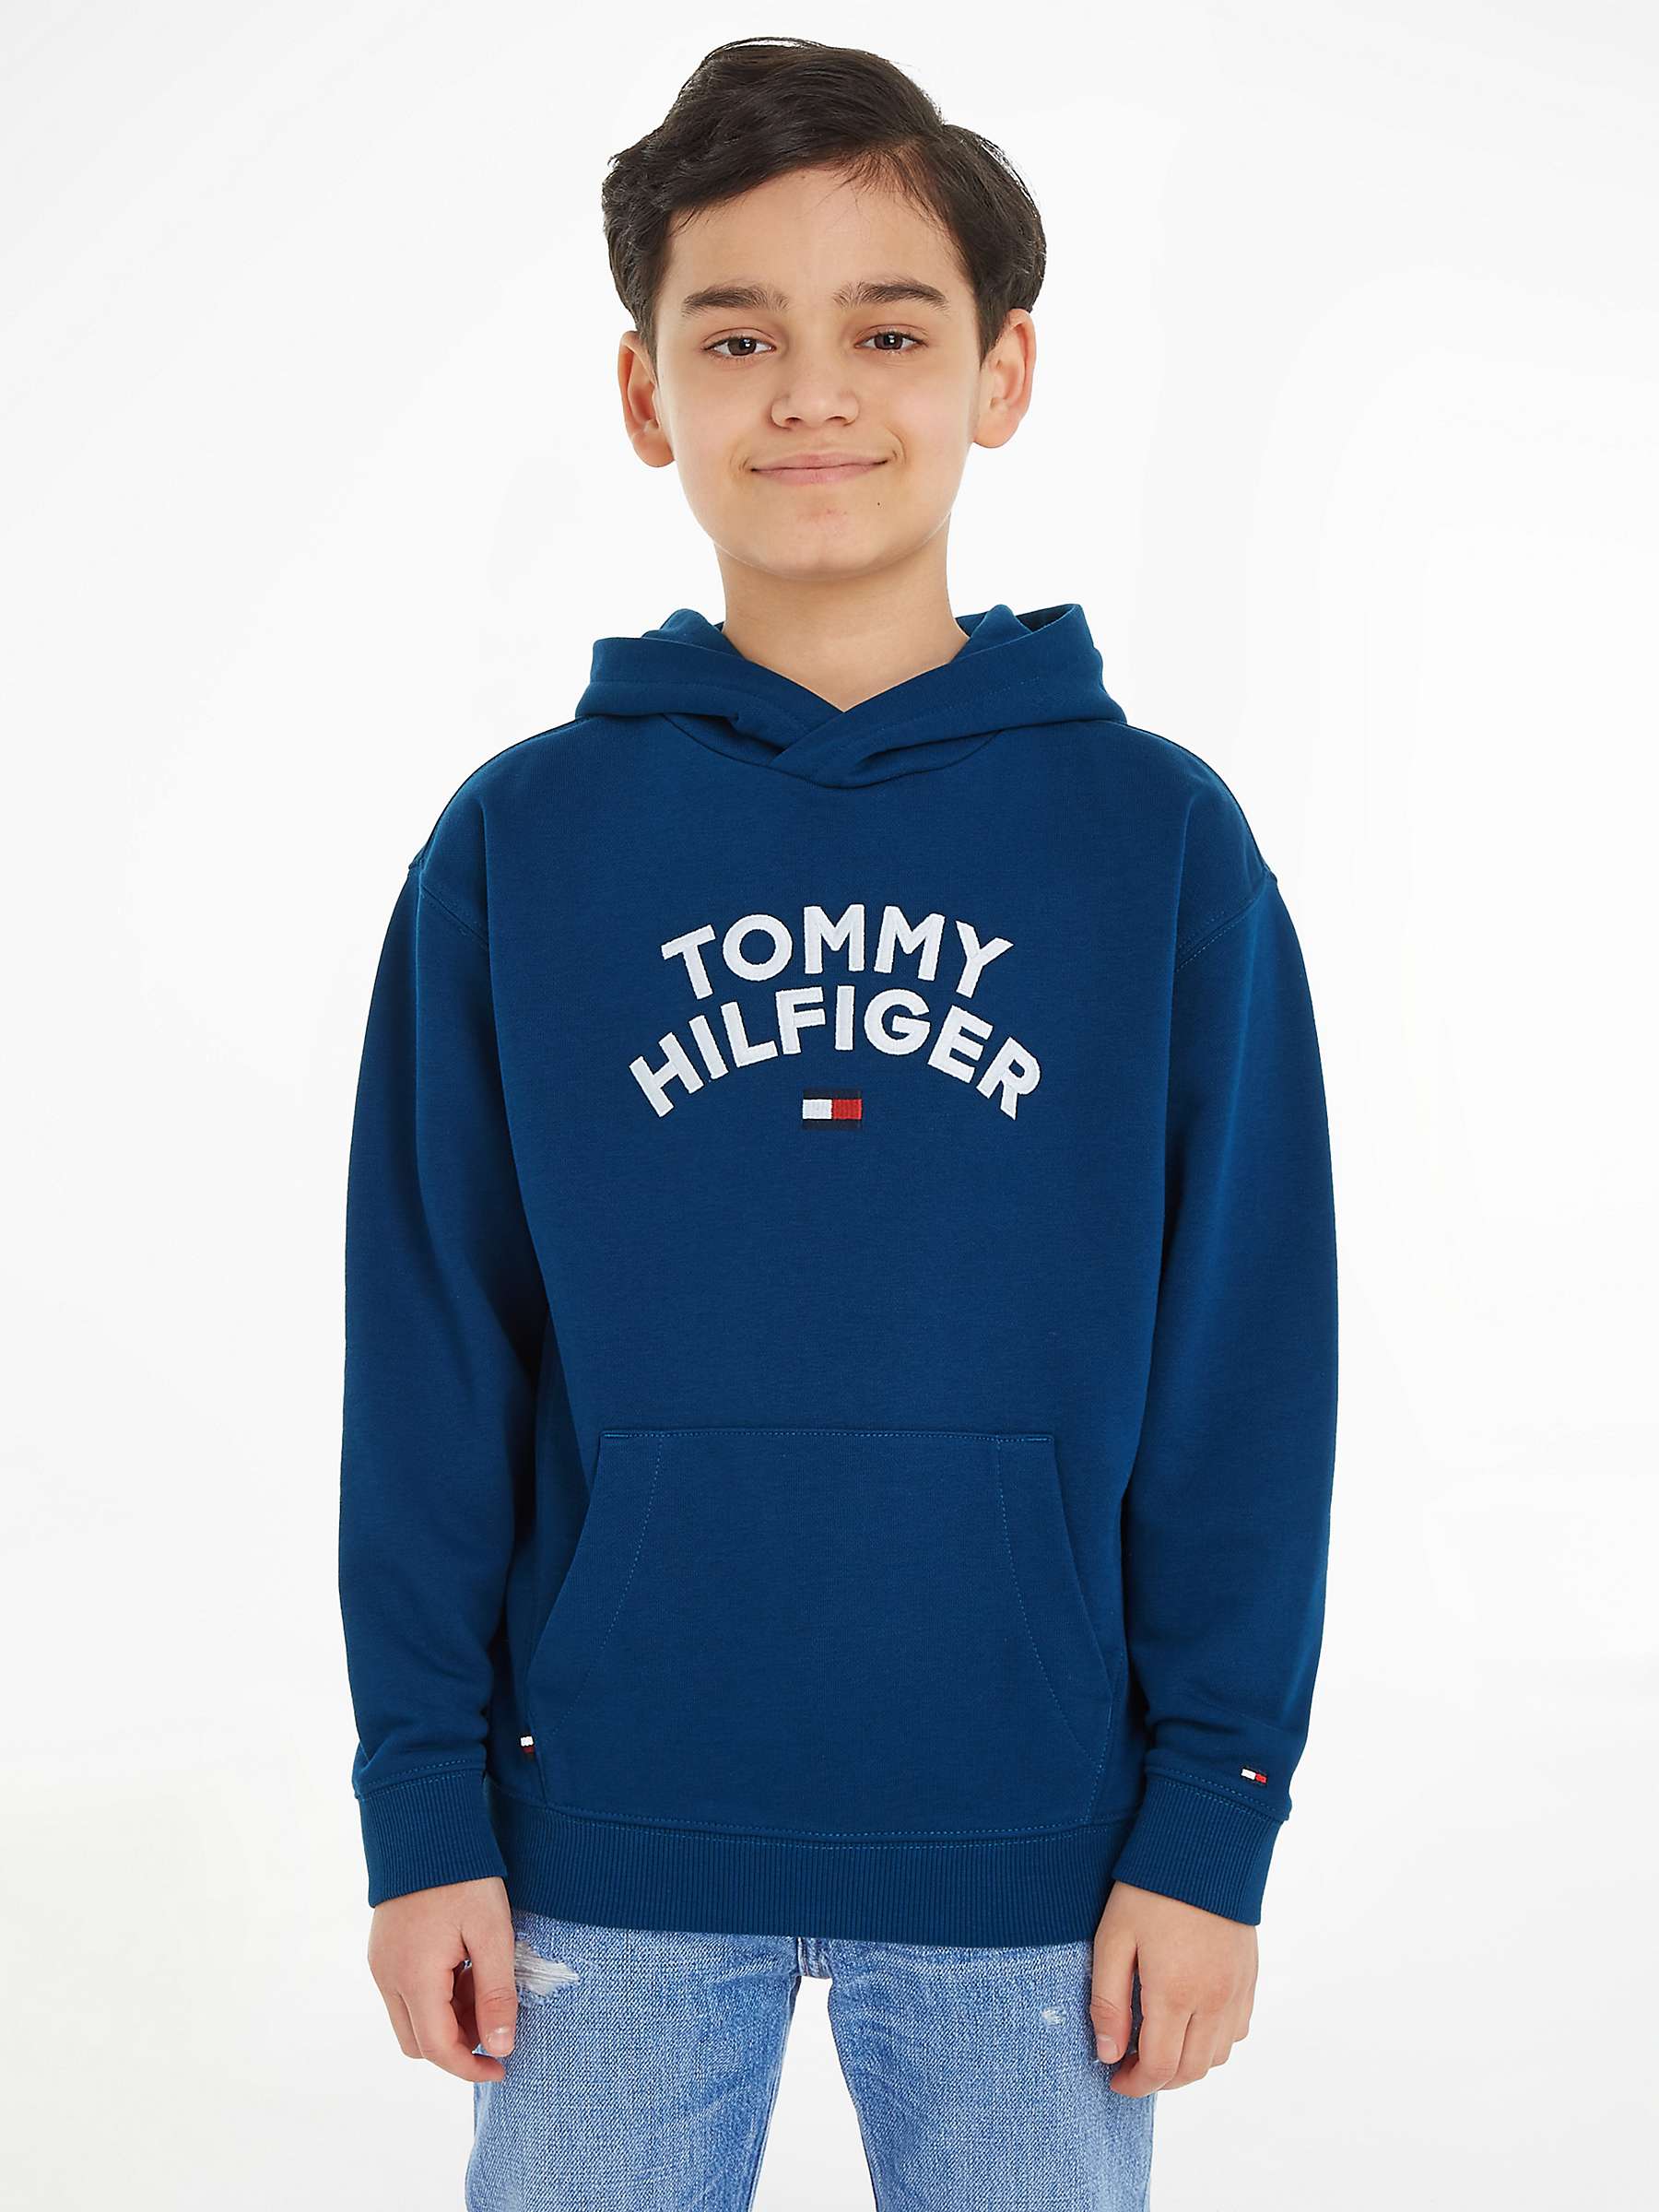 Tommy Hilfiger Kids' Tommy Flag Logo Hoodie, Blue Indigo at John Lewis ...